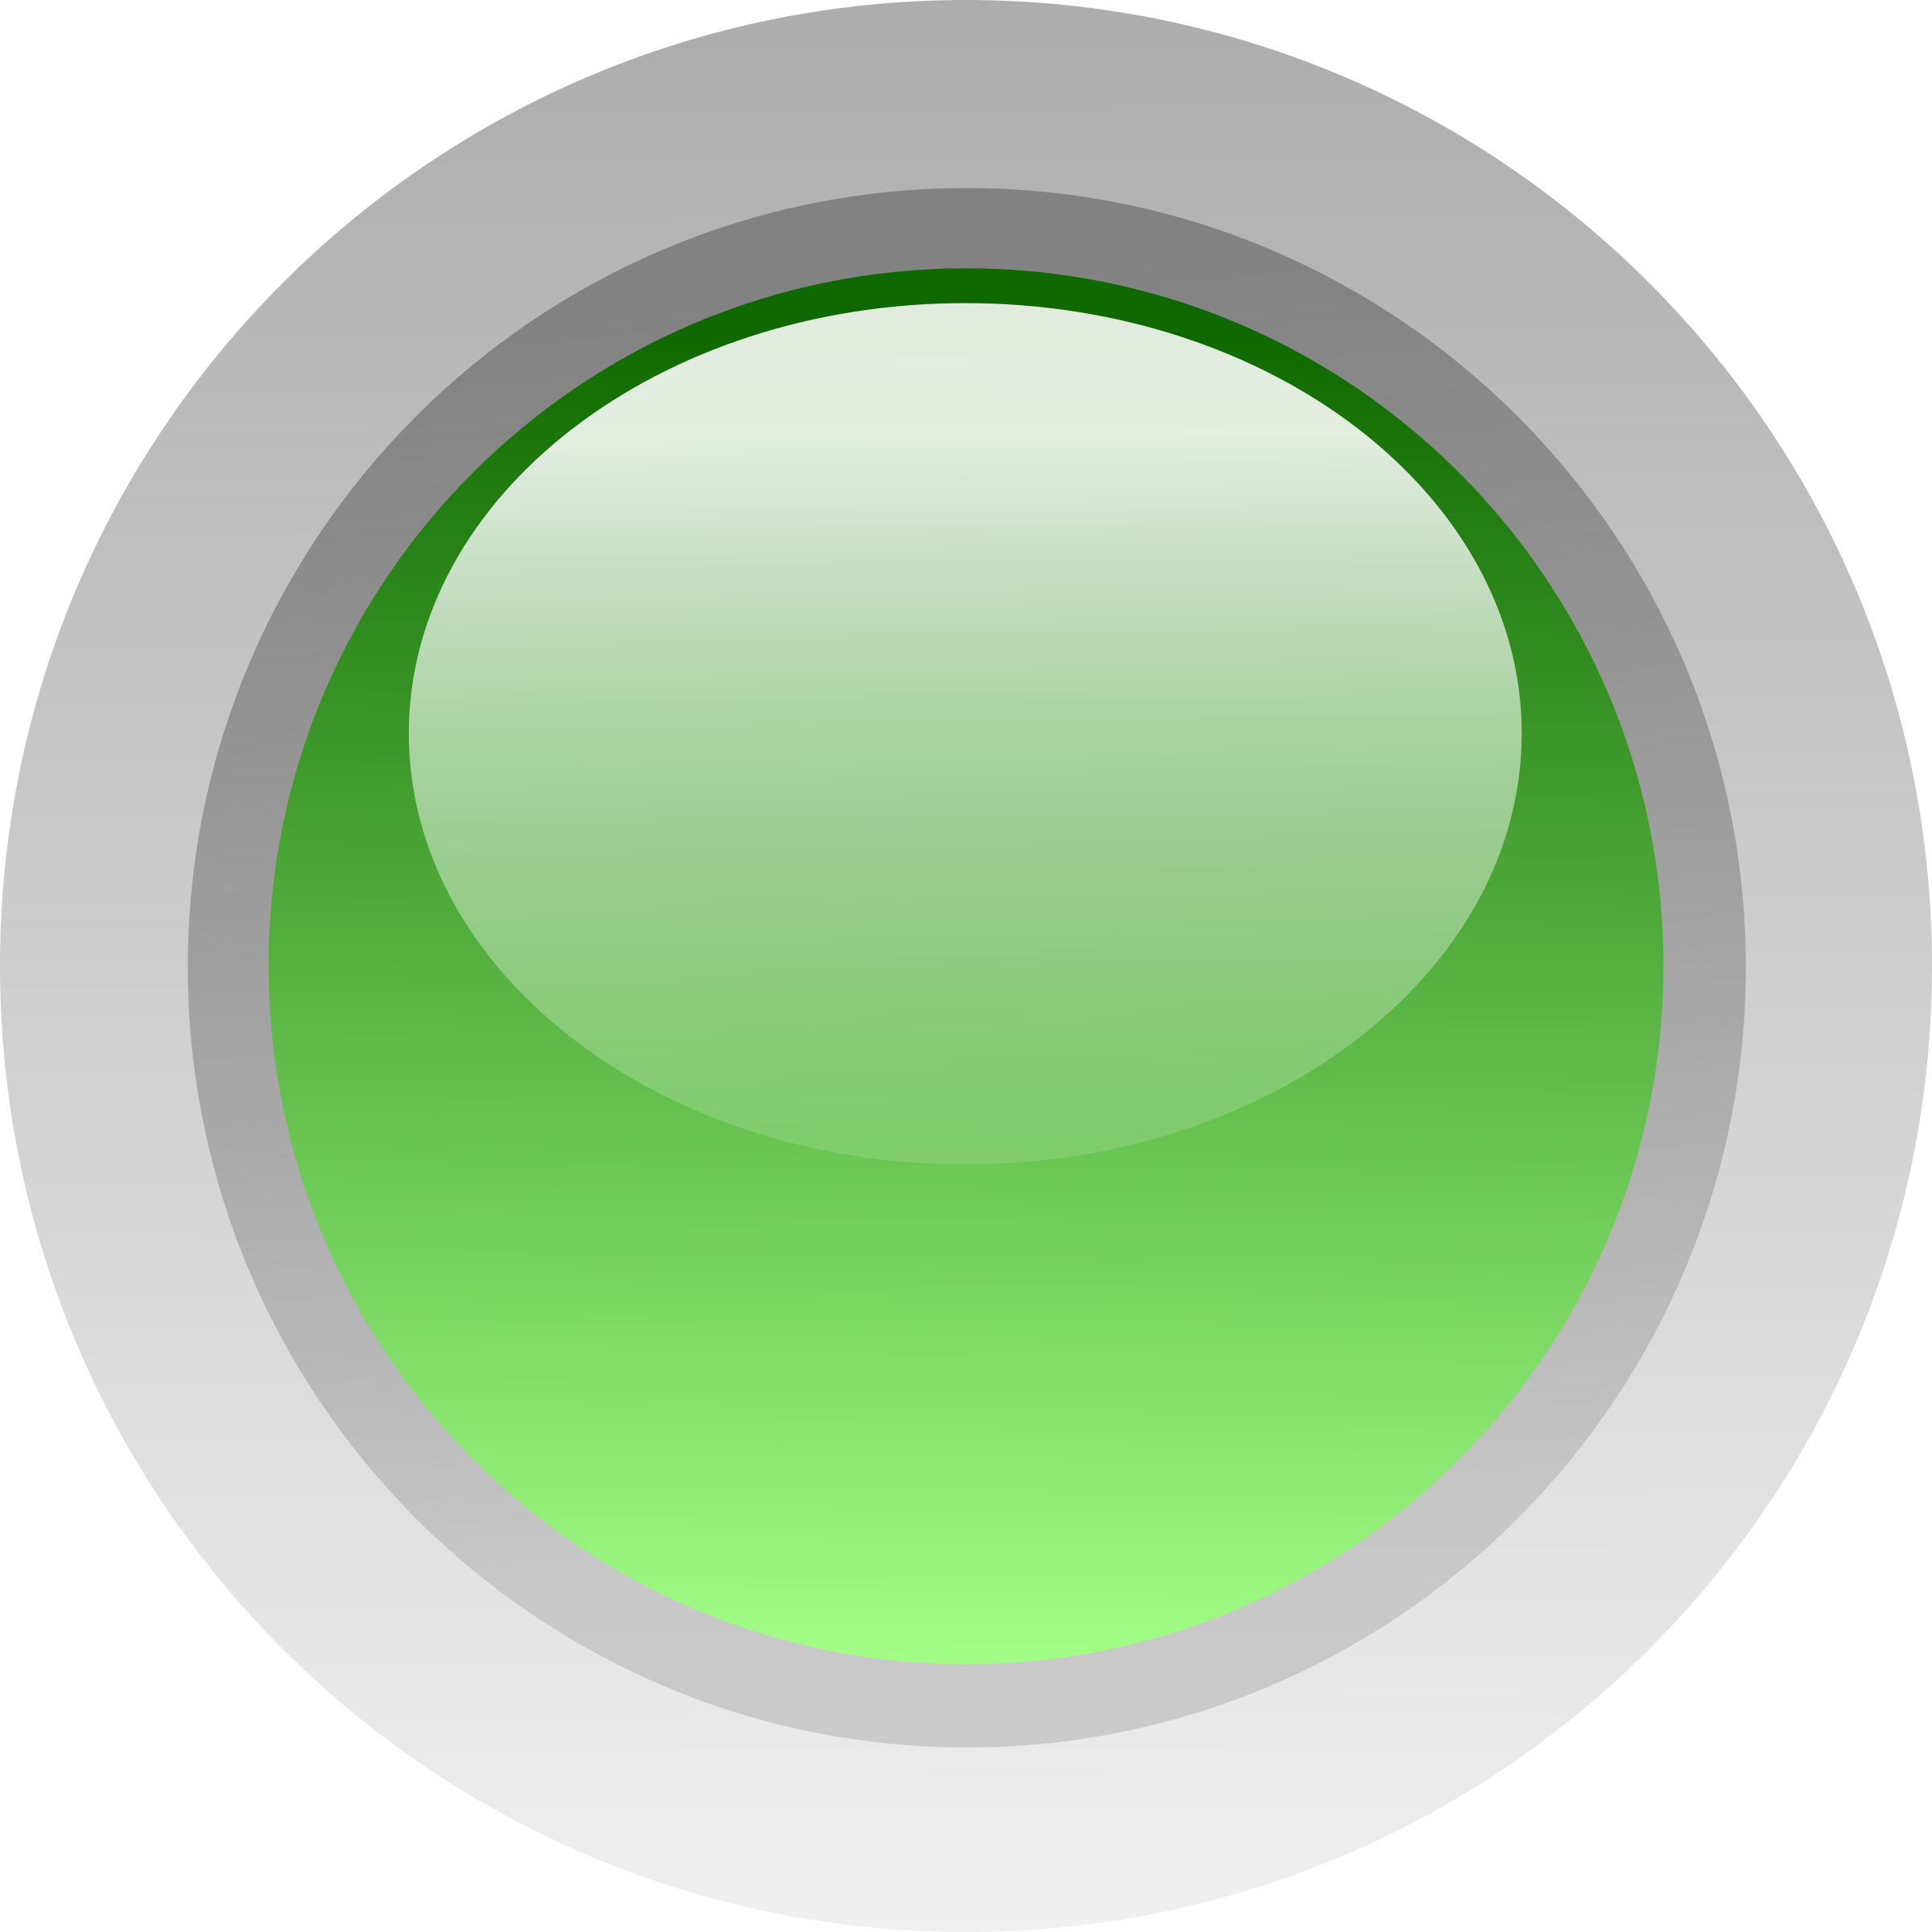 Led big image png. Circle clipart green